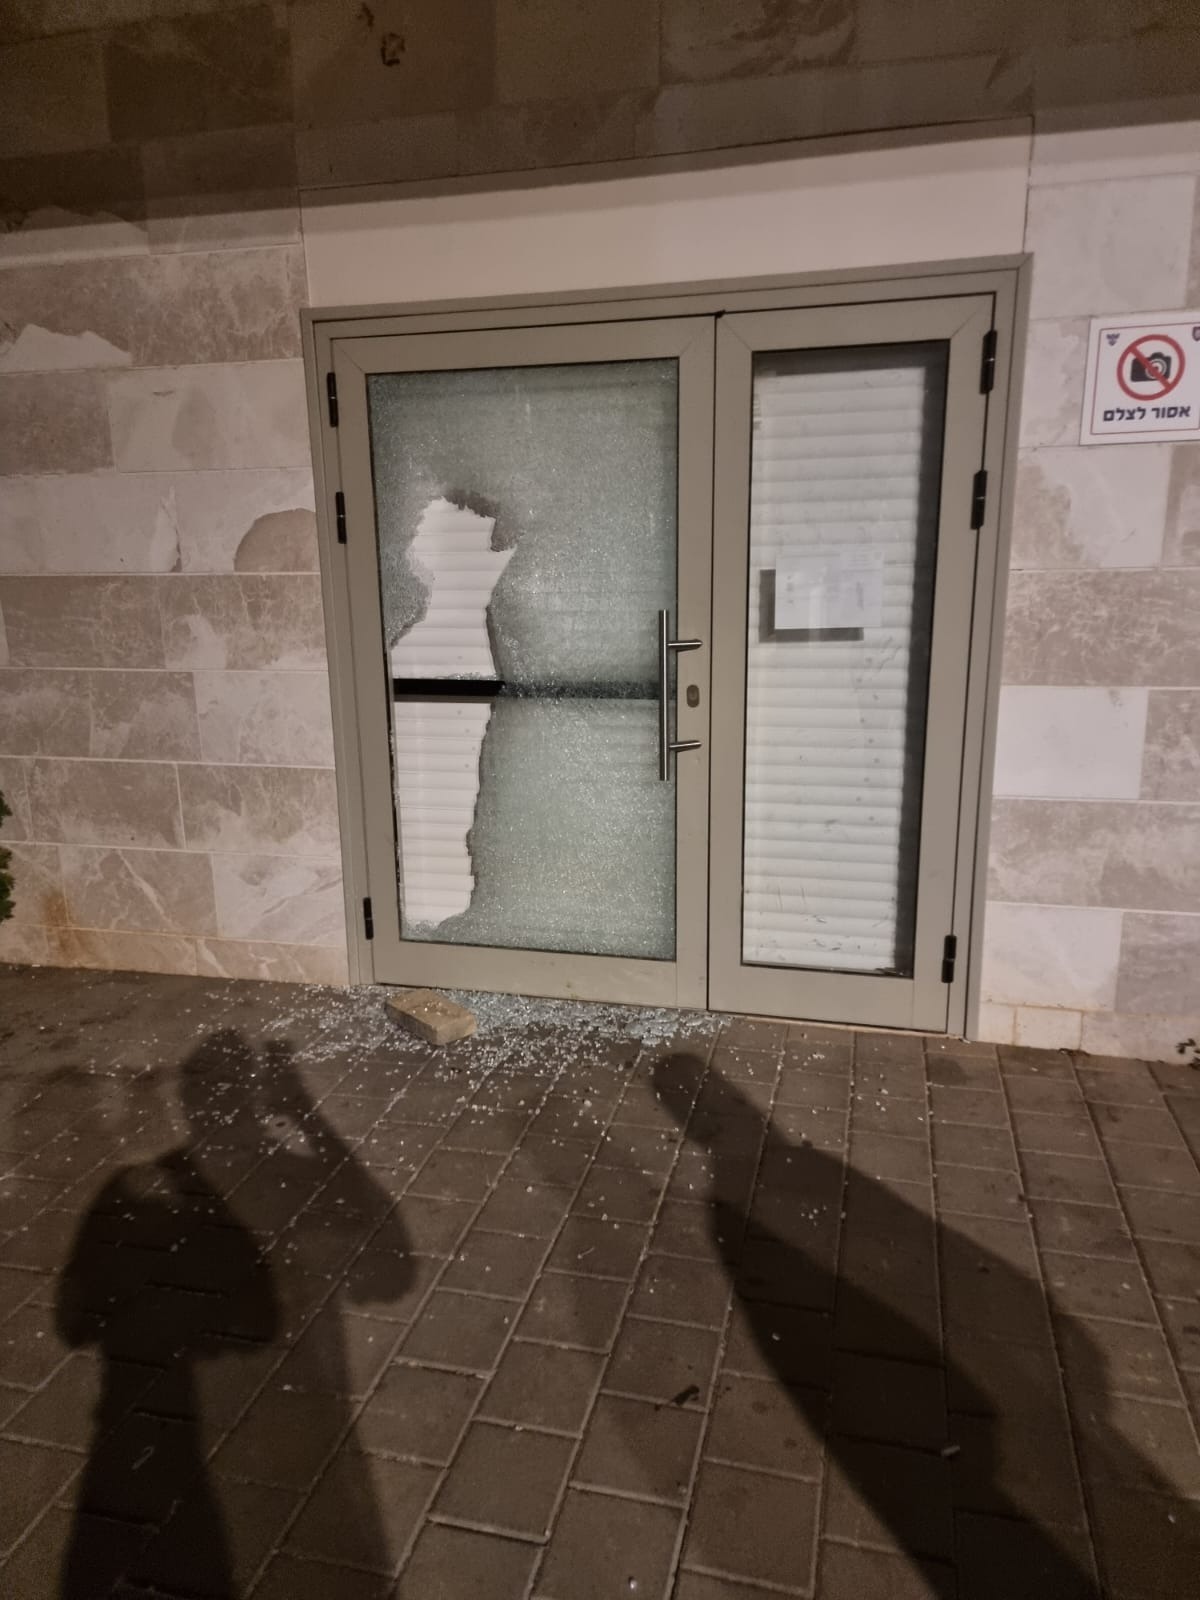 דלתות נשברו בהפגנה אלימה